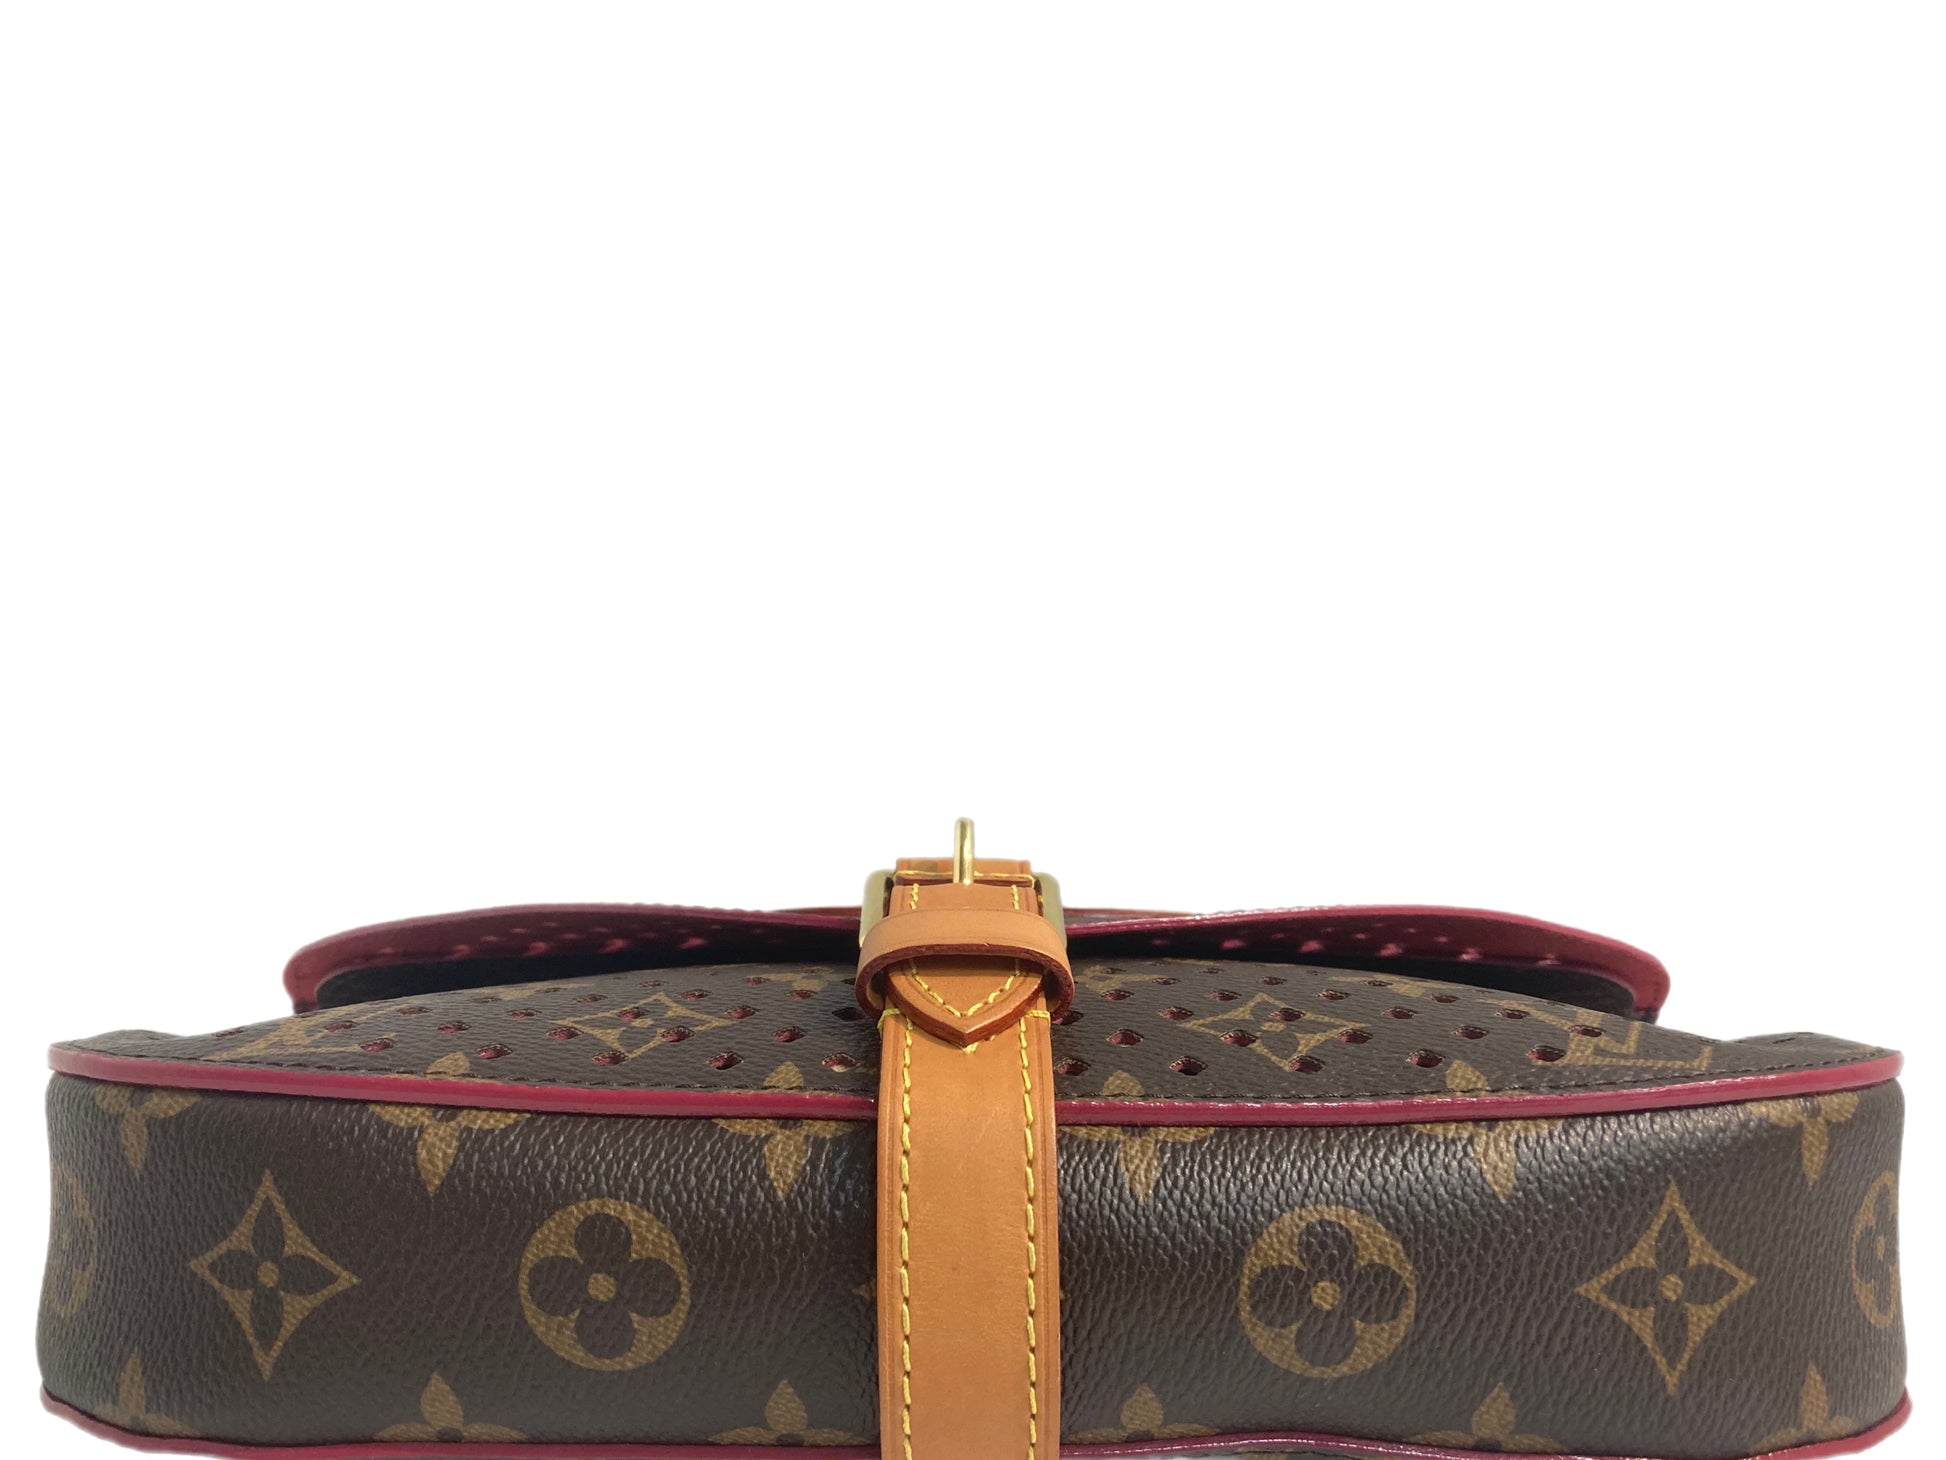 Louis Vuitton Saumur Perforated Clutch Bag